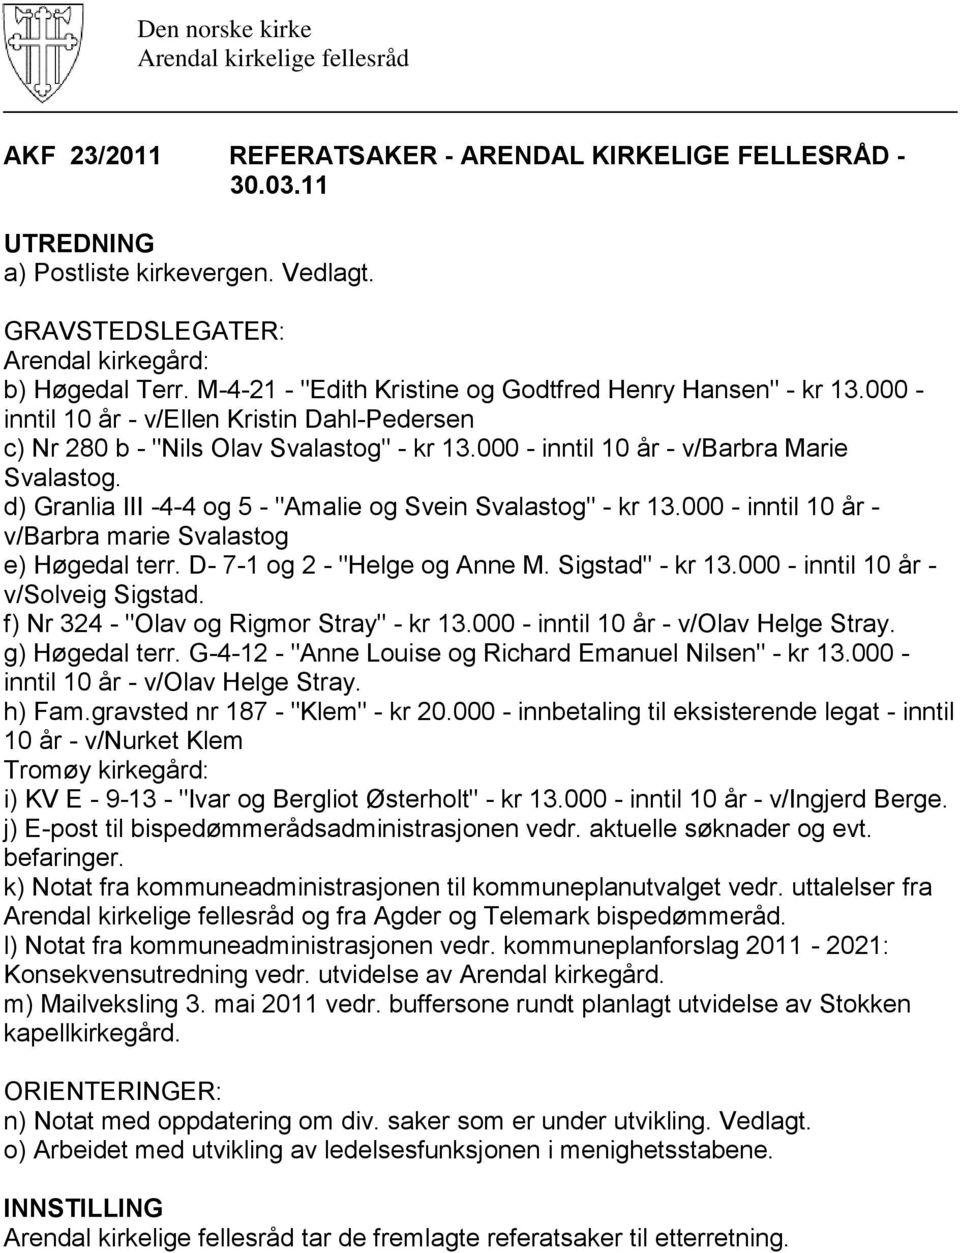 d) Granlia III -4-4 og 5 - "Amalie og Svein Svalastog" - kr 13.000 - inntil 10 år - v/barbra marie Svalastog e) Høgedal terr. D- 7-1 og 2 - "Helge og Anne M. Sigstad" - kr 13.